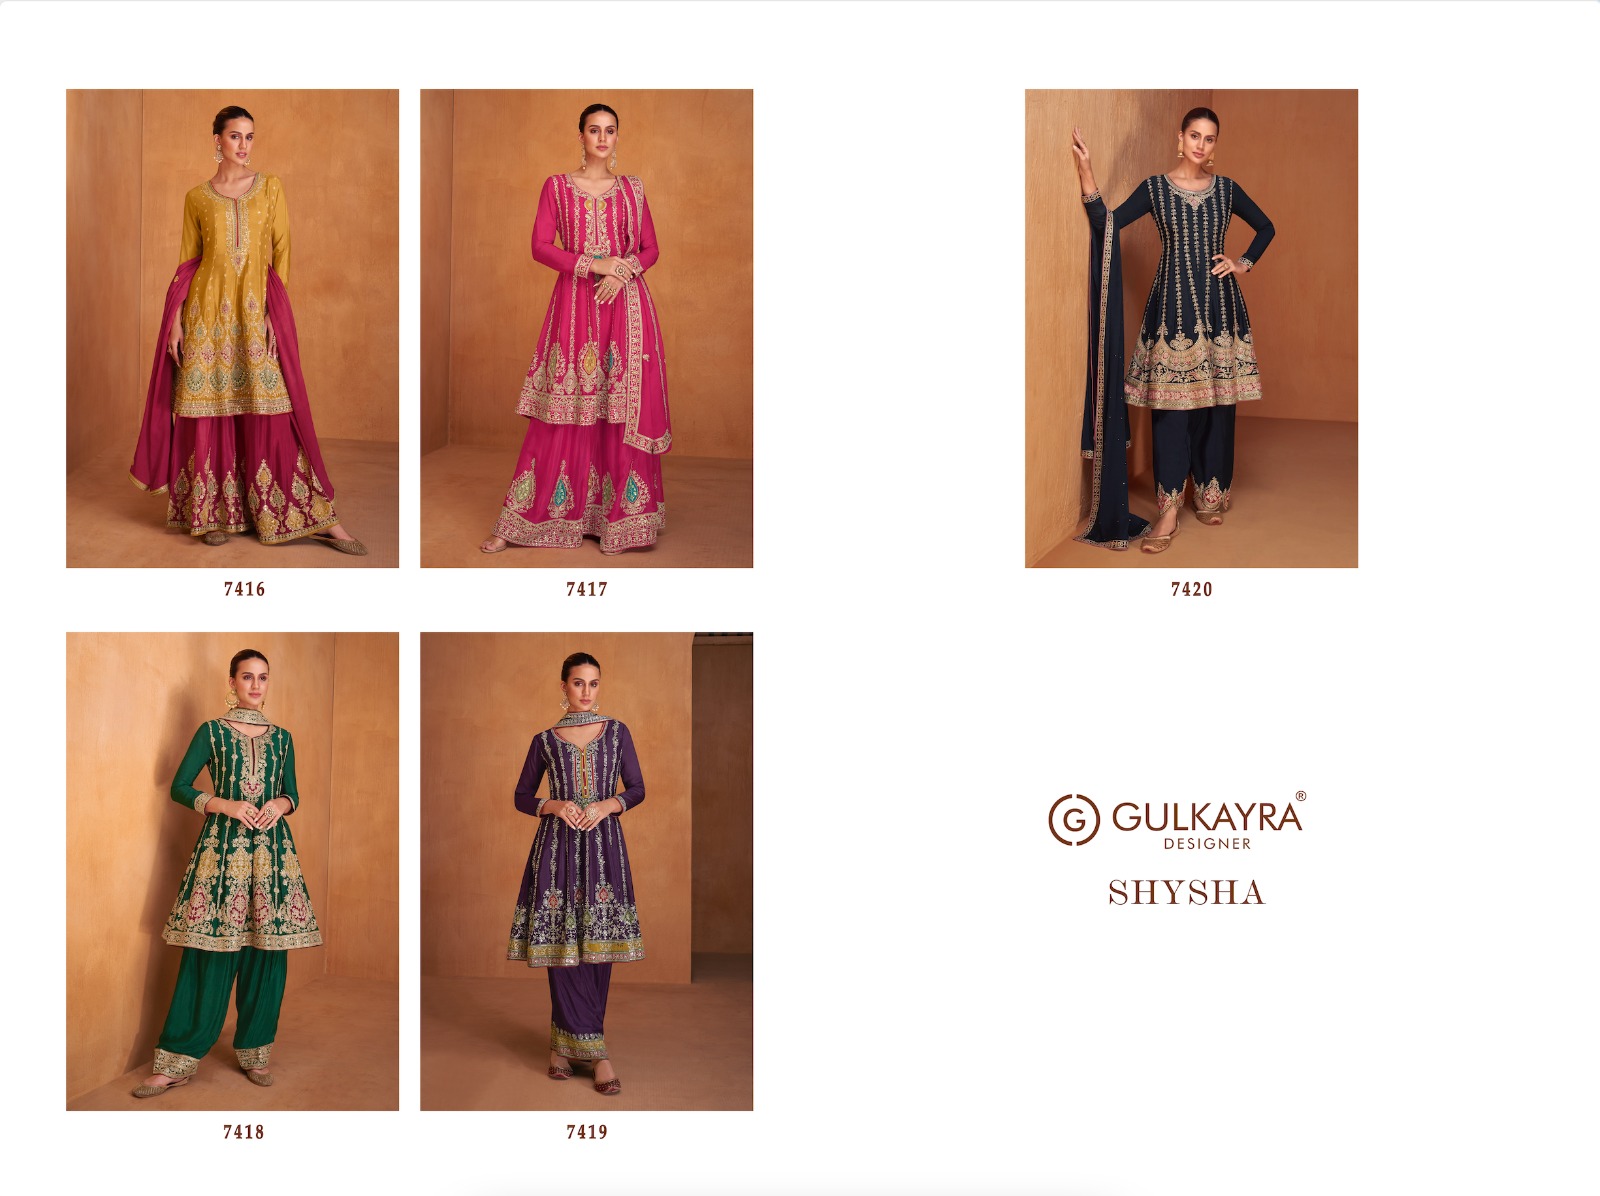 Gulkayra Shysha collection 7